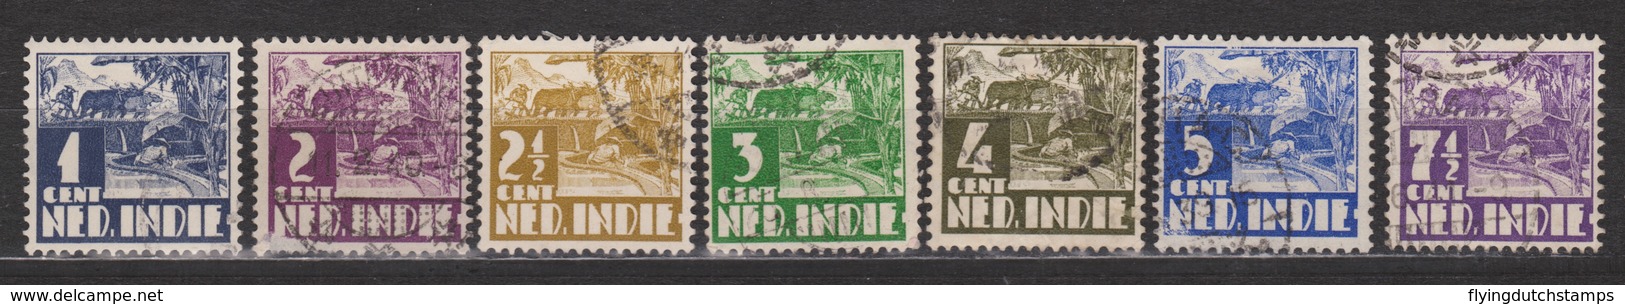 Nederlands Indie 246 247 248 249 250 251 252 Used Watermark ; Karbouw 1938 Netherlands Indies PER PIECE - Niederländisch-Indien